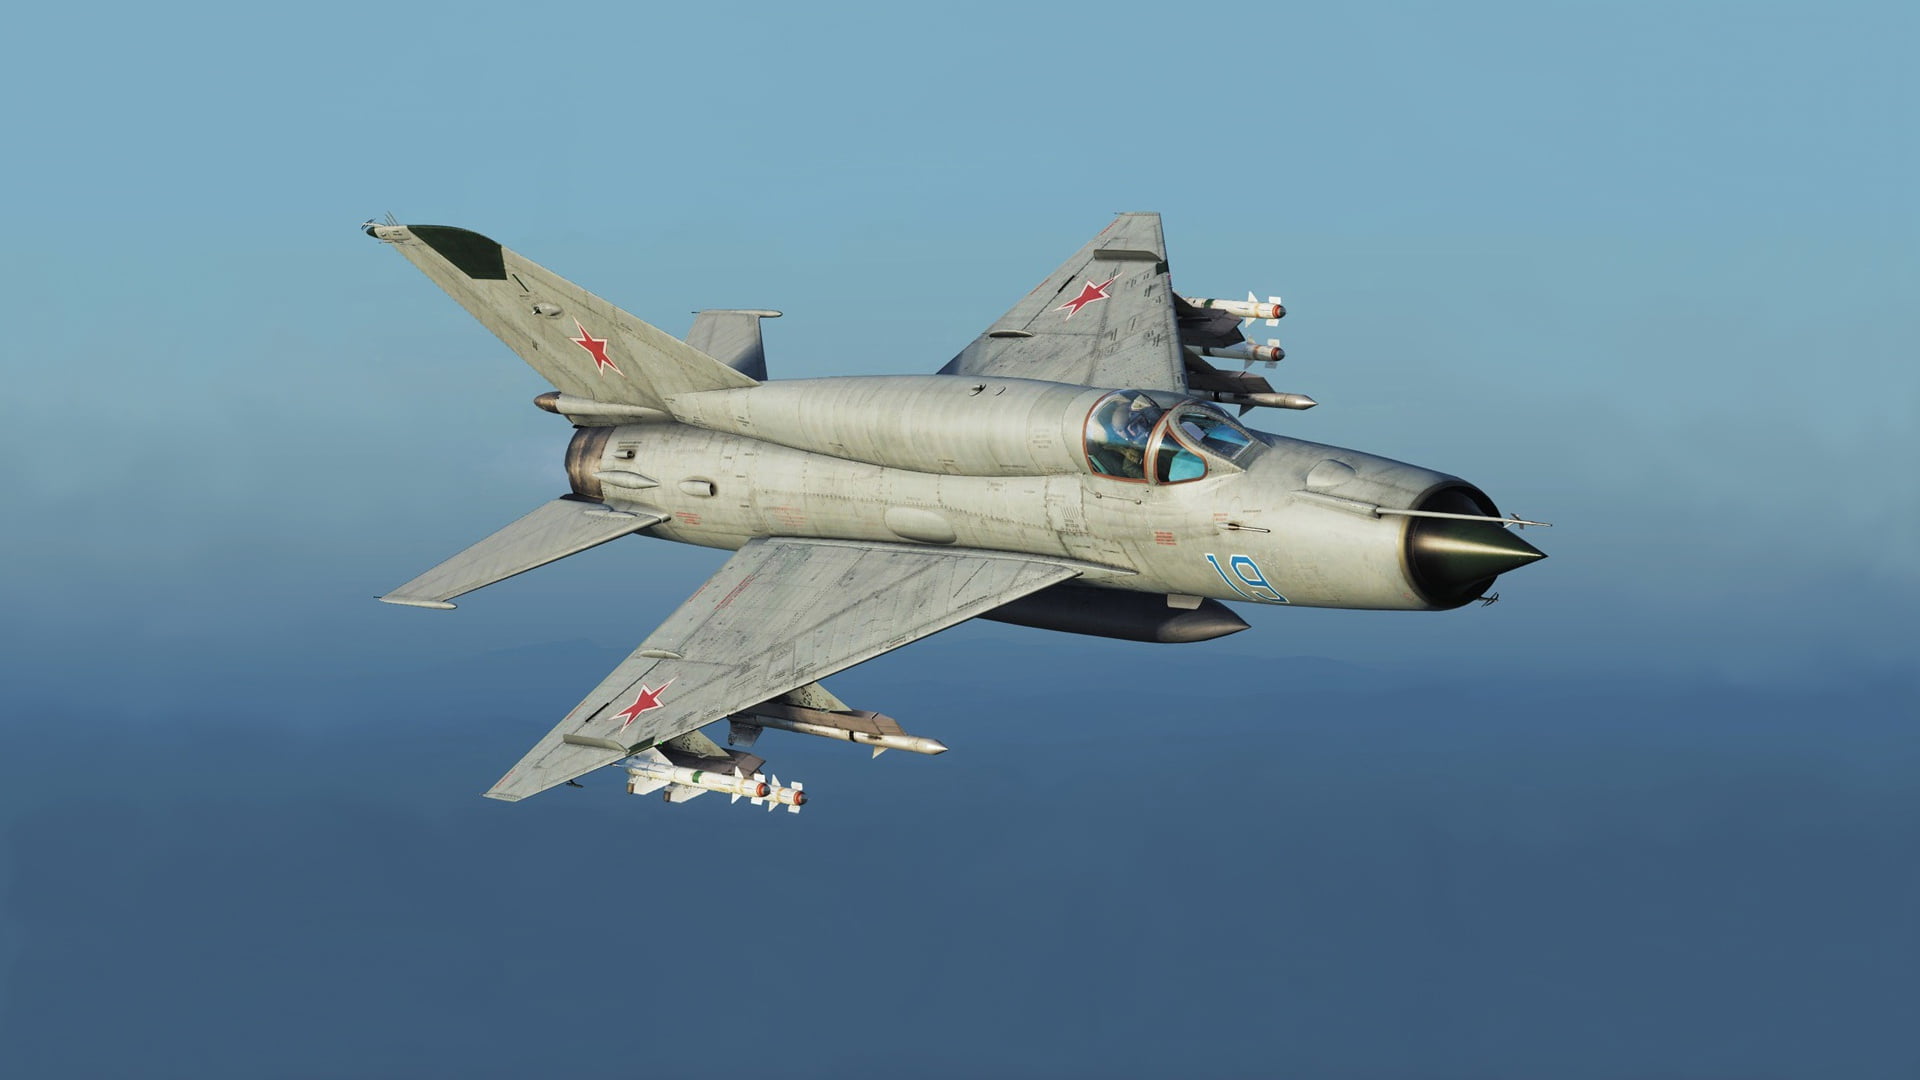 Legend, OKB MiG, MiG-21bis, Frontline fighter